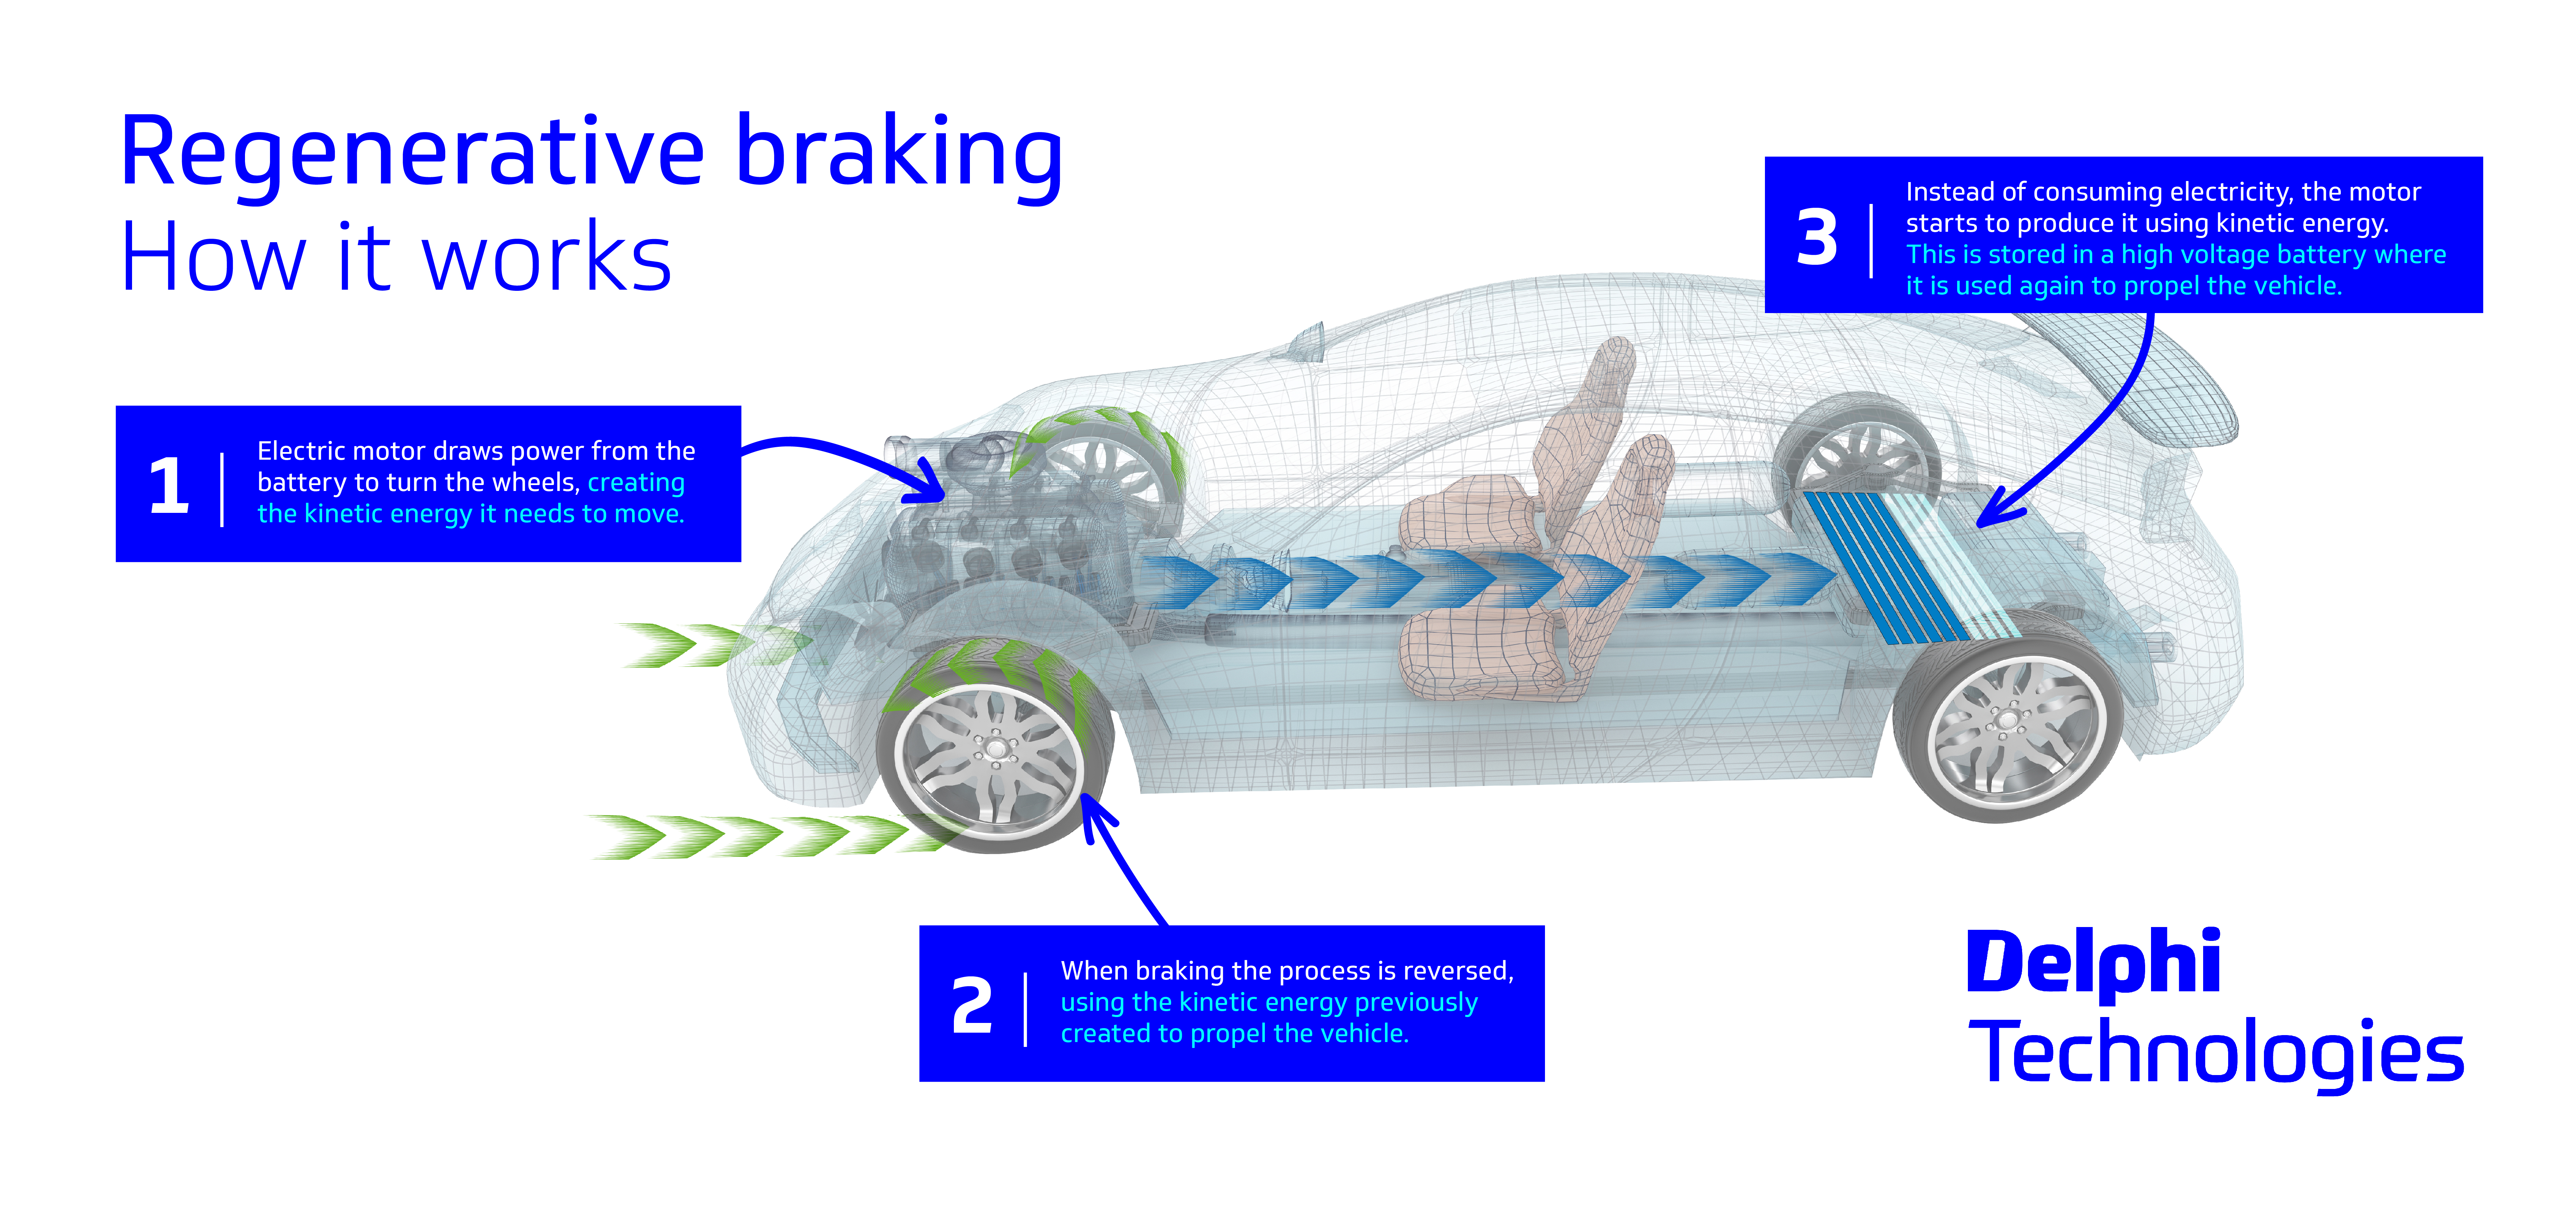 How does regenerative braking work in HEVs?